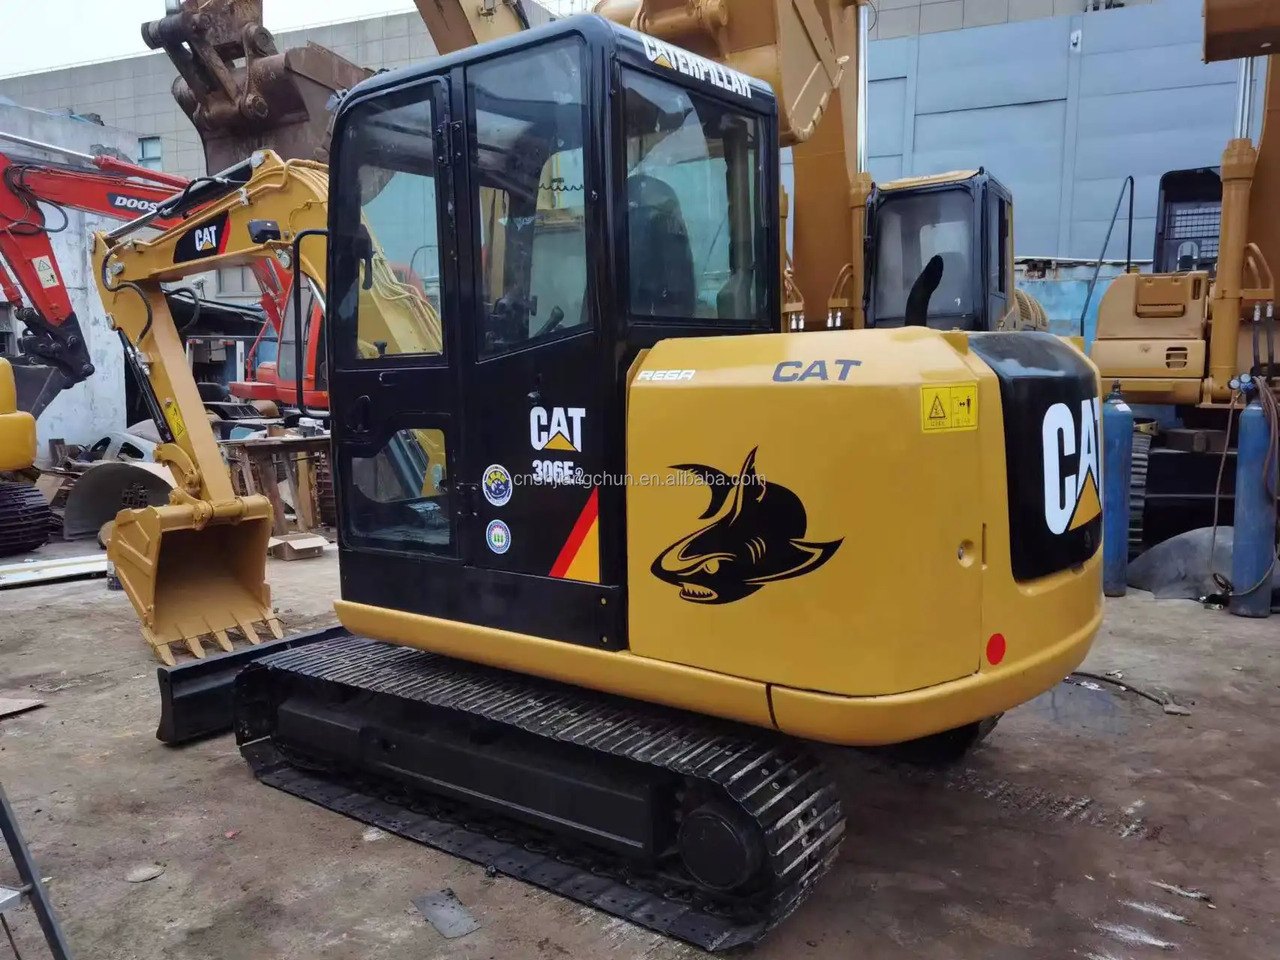 Crawler excavator Used Caterpillar Crawler excavator CAT 306E2 in good condition for sale: picture 4